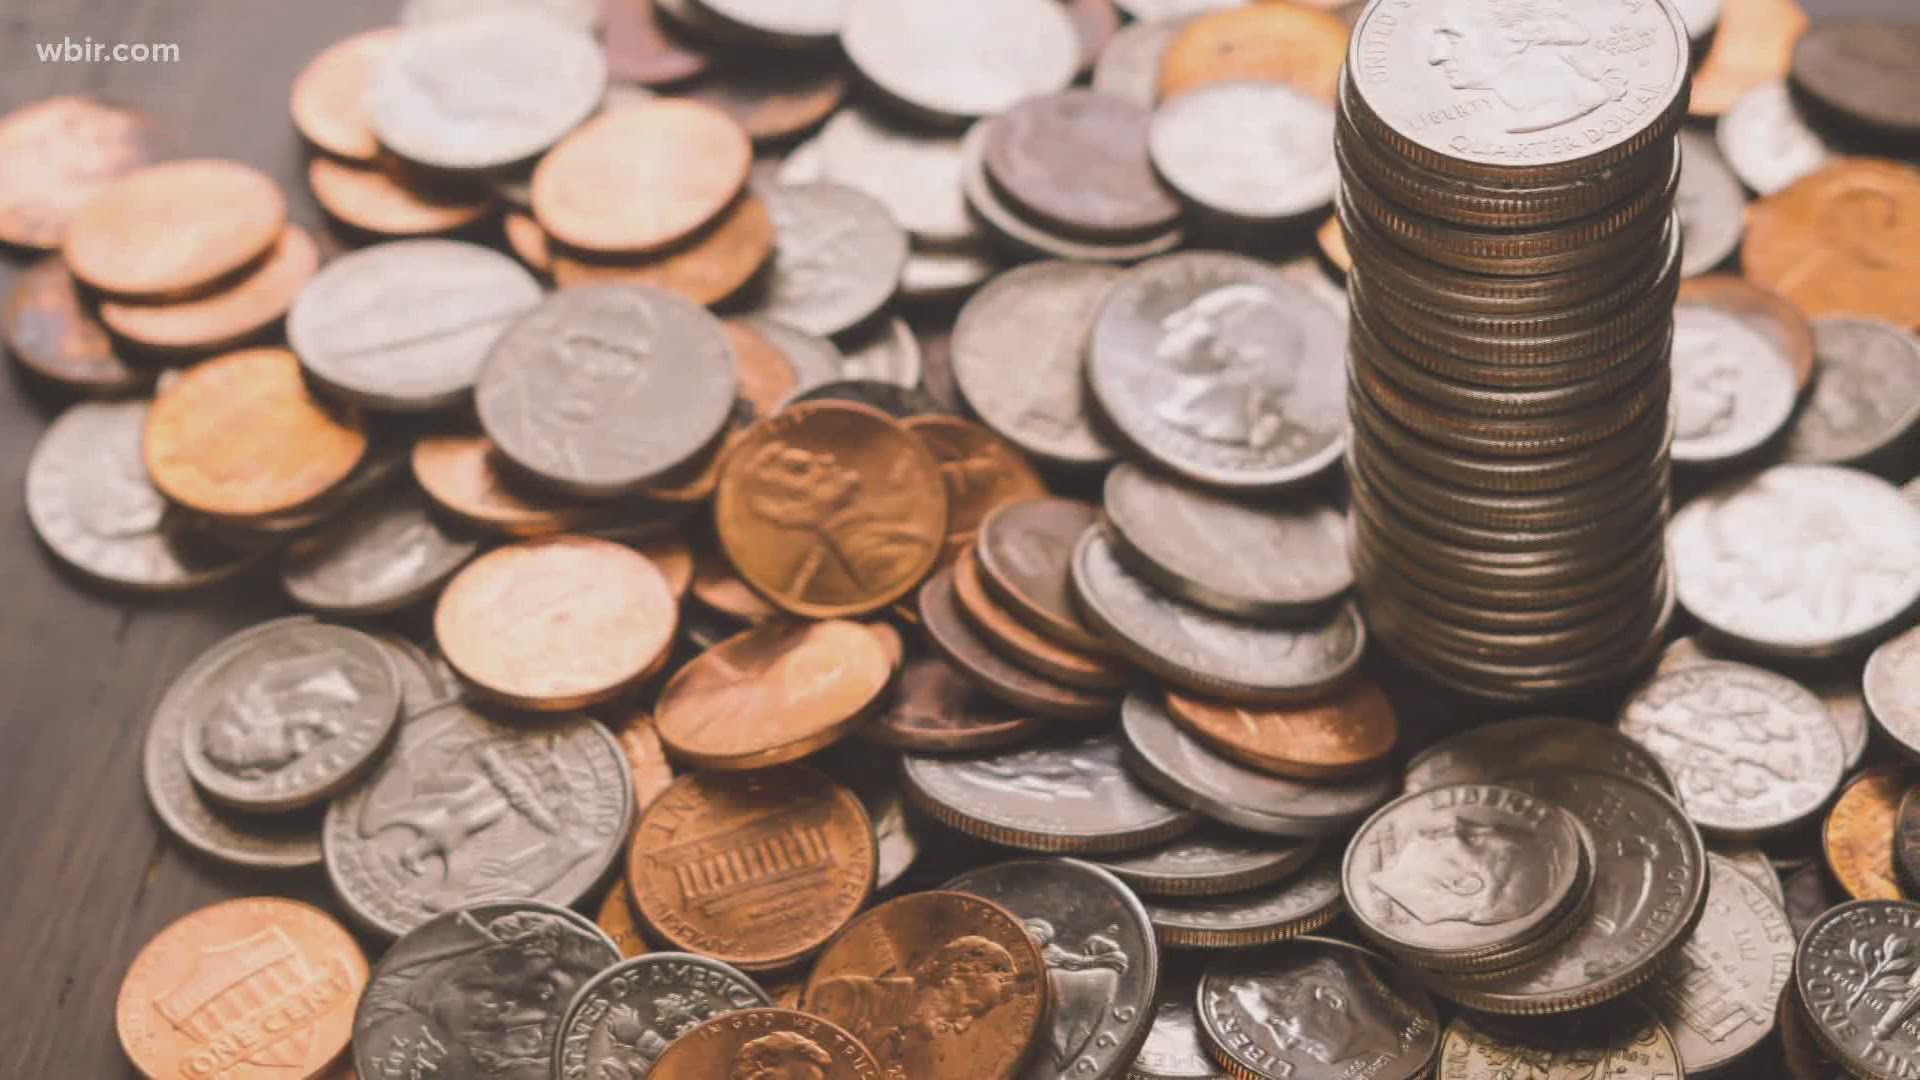 Résultat de recherche d'images pour "money coins"